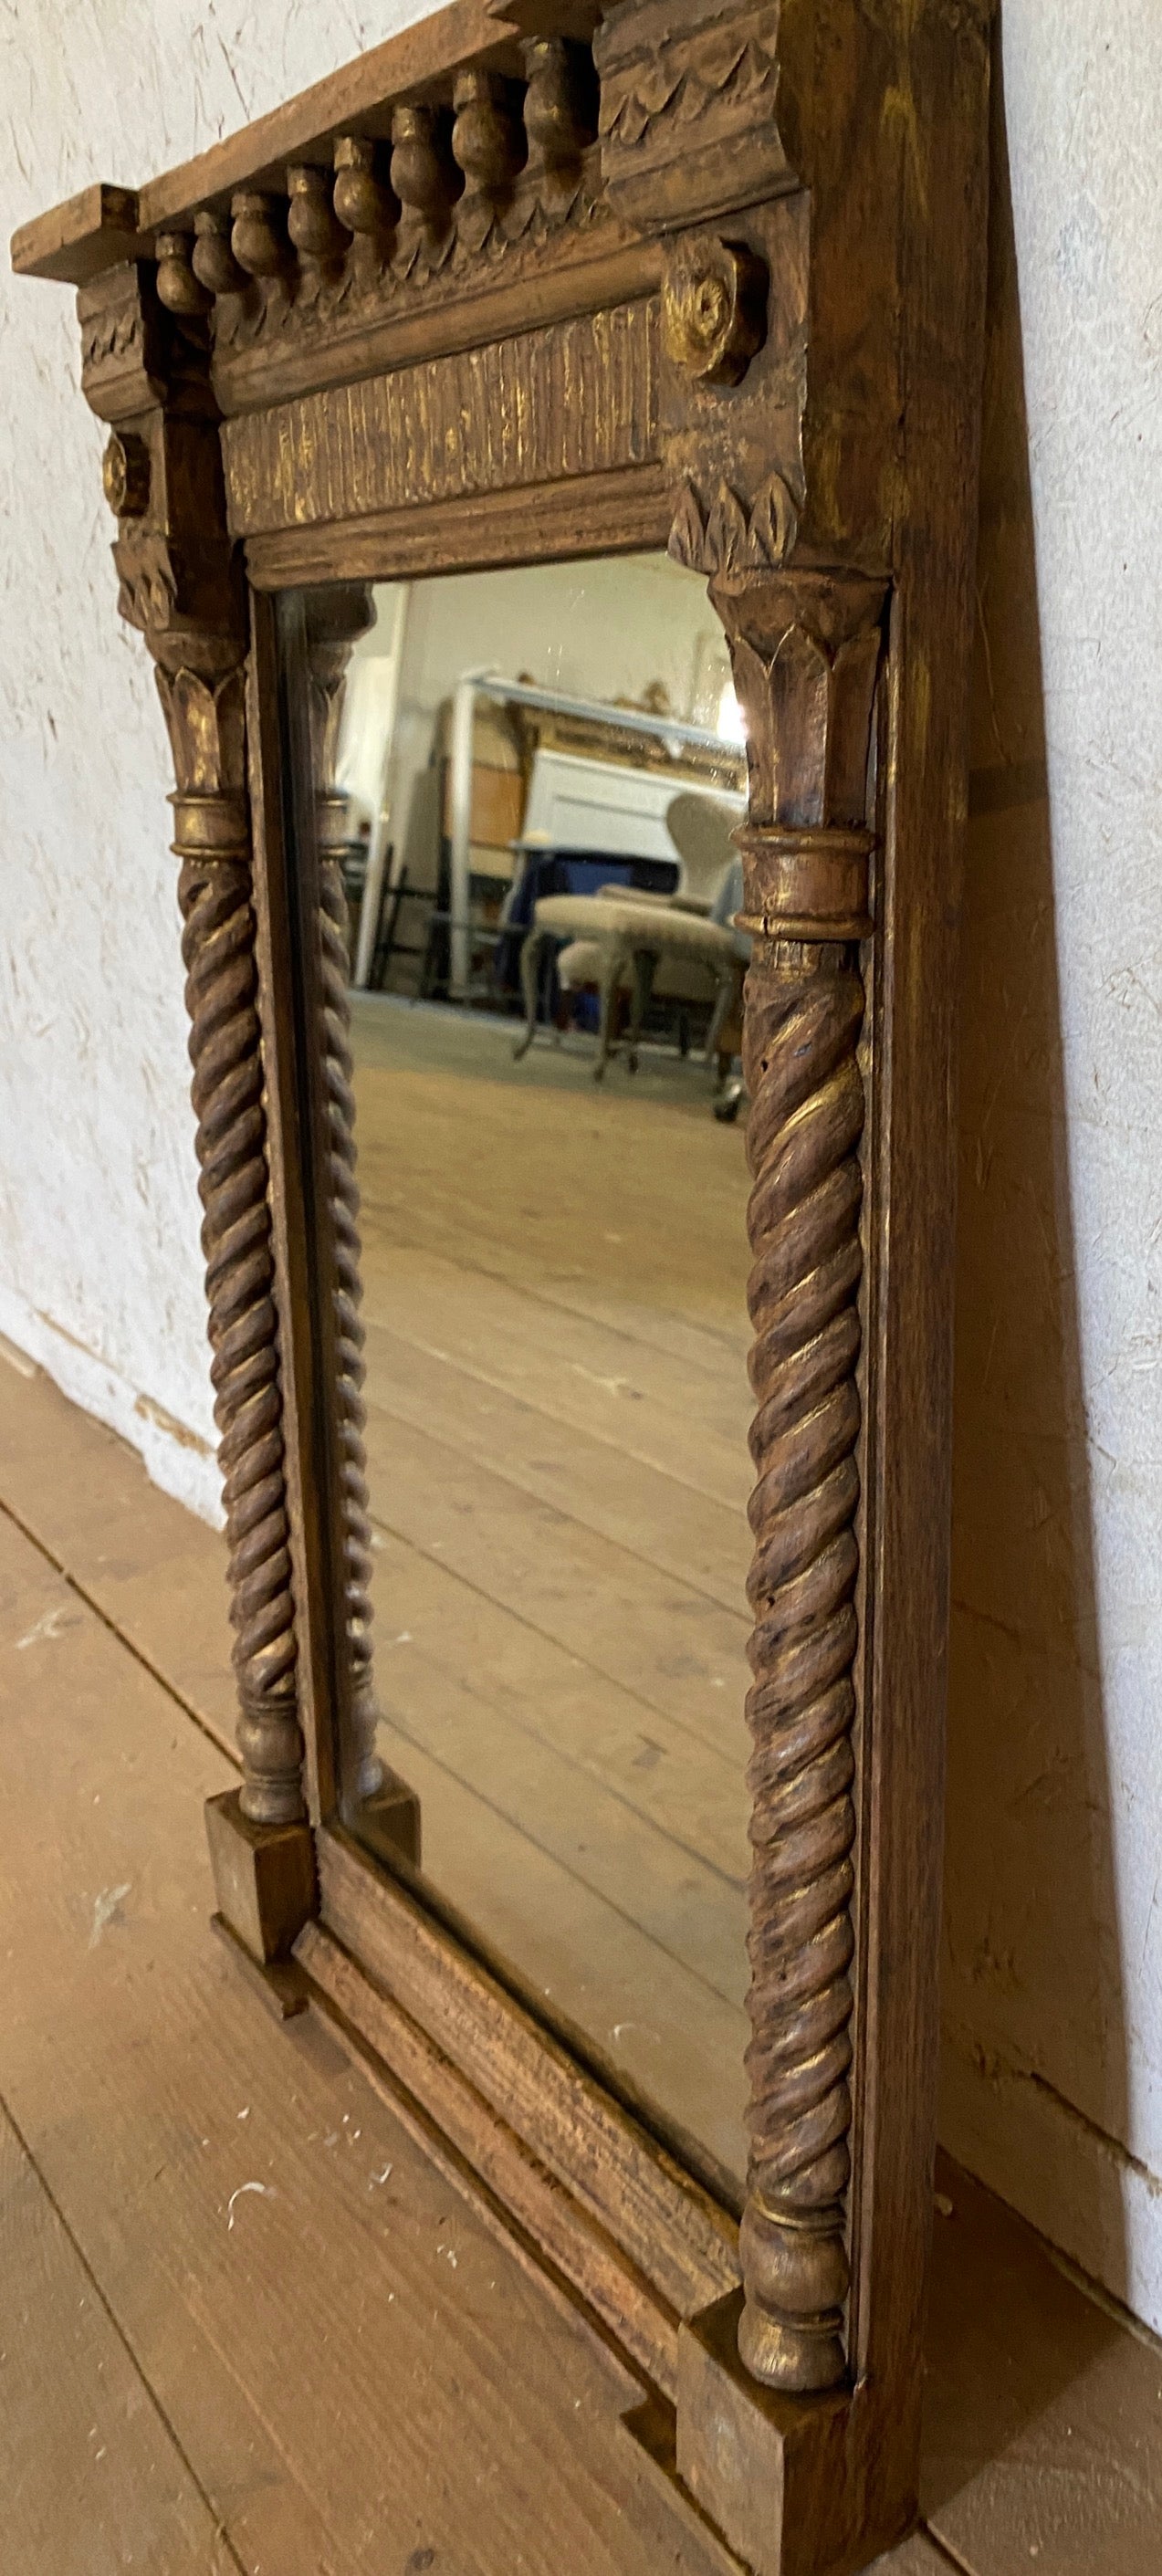 Un miroir mural rectangulaire italien en bois doré de plus petite taille, dans le style d'un tabernacle de la Renaissance, est doté d'un fronton et de colonnes classiques tournées en guise de supports. La dorure d'origine, le miroir à plaque ancien,